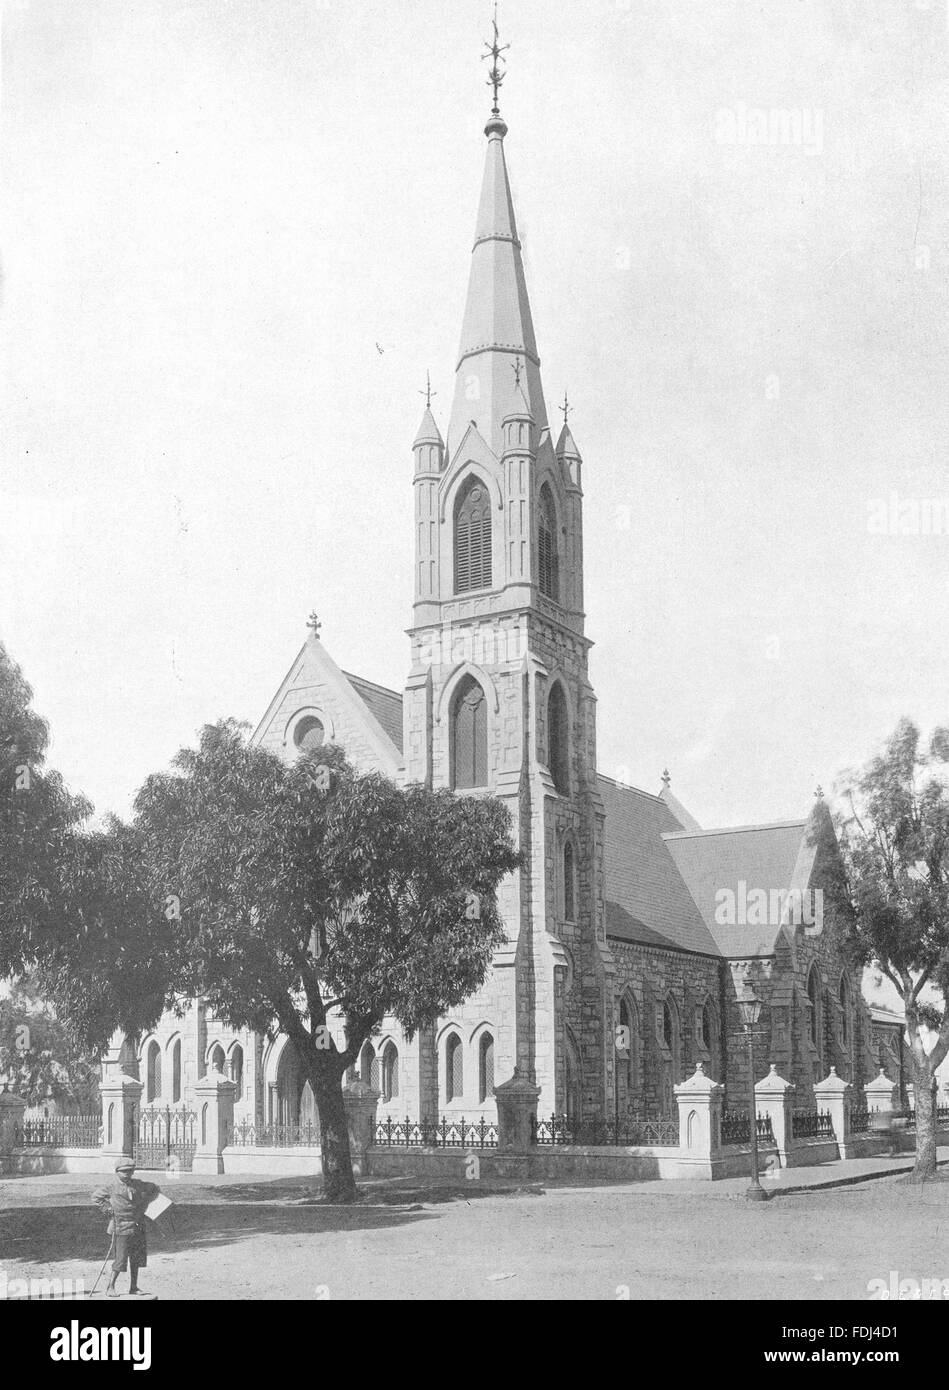 Afrique du Sud : St John's église wesleyenne, Havelock, Port Elizabeth, 1899 Banque D'Images